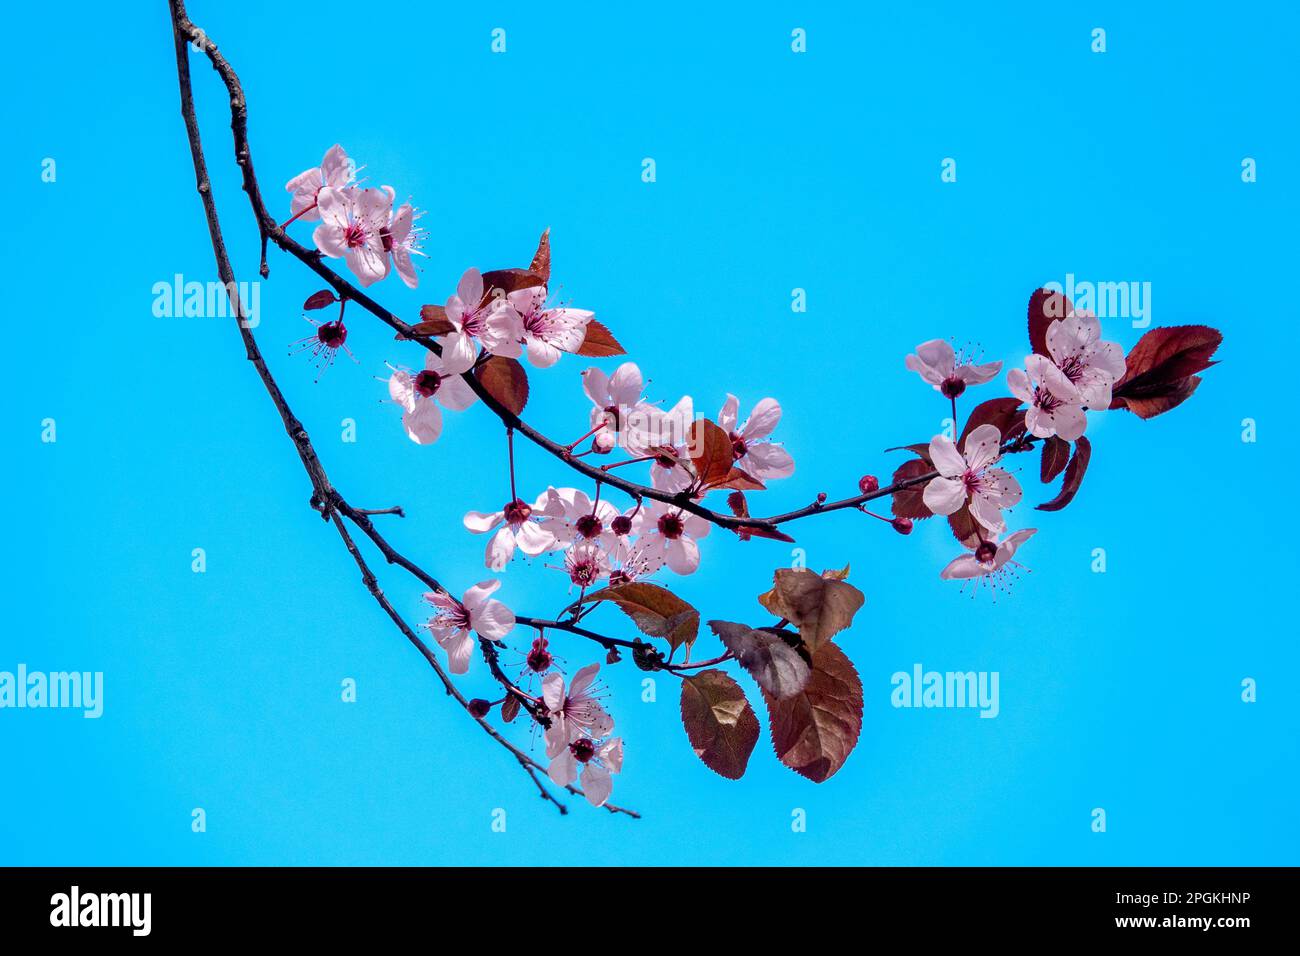 Gros plan de quelques fleurs de prune de cerise (Prunus cerasifera) Banque D'Images